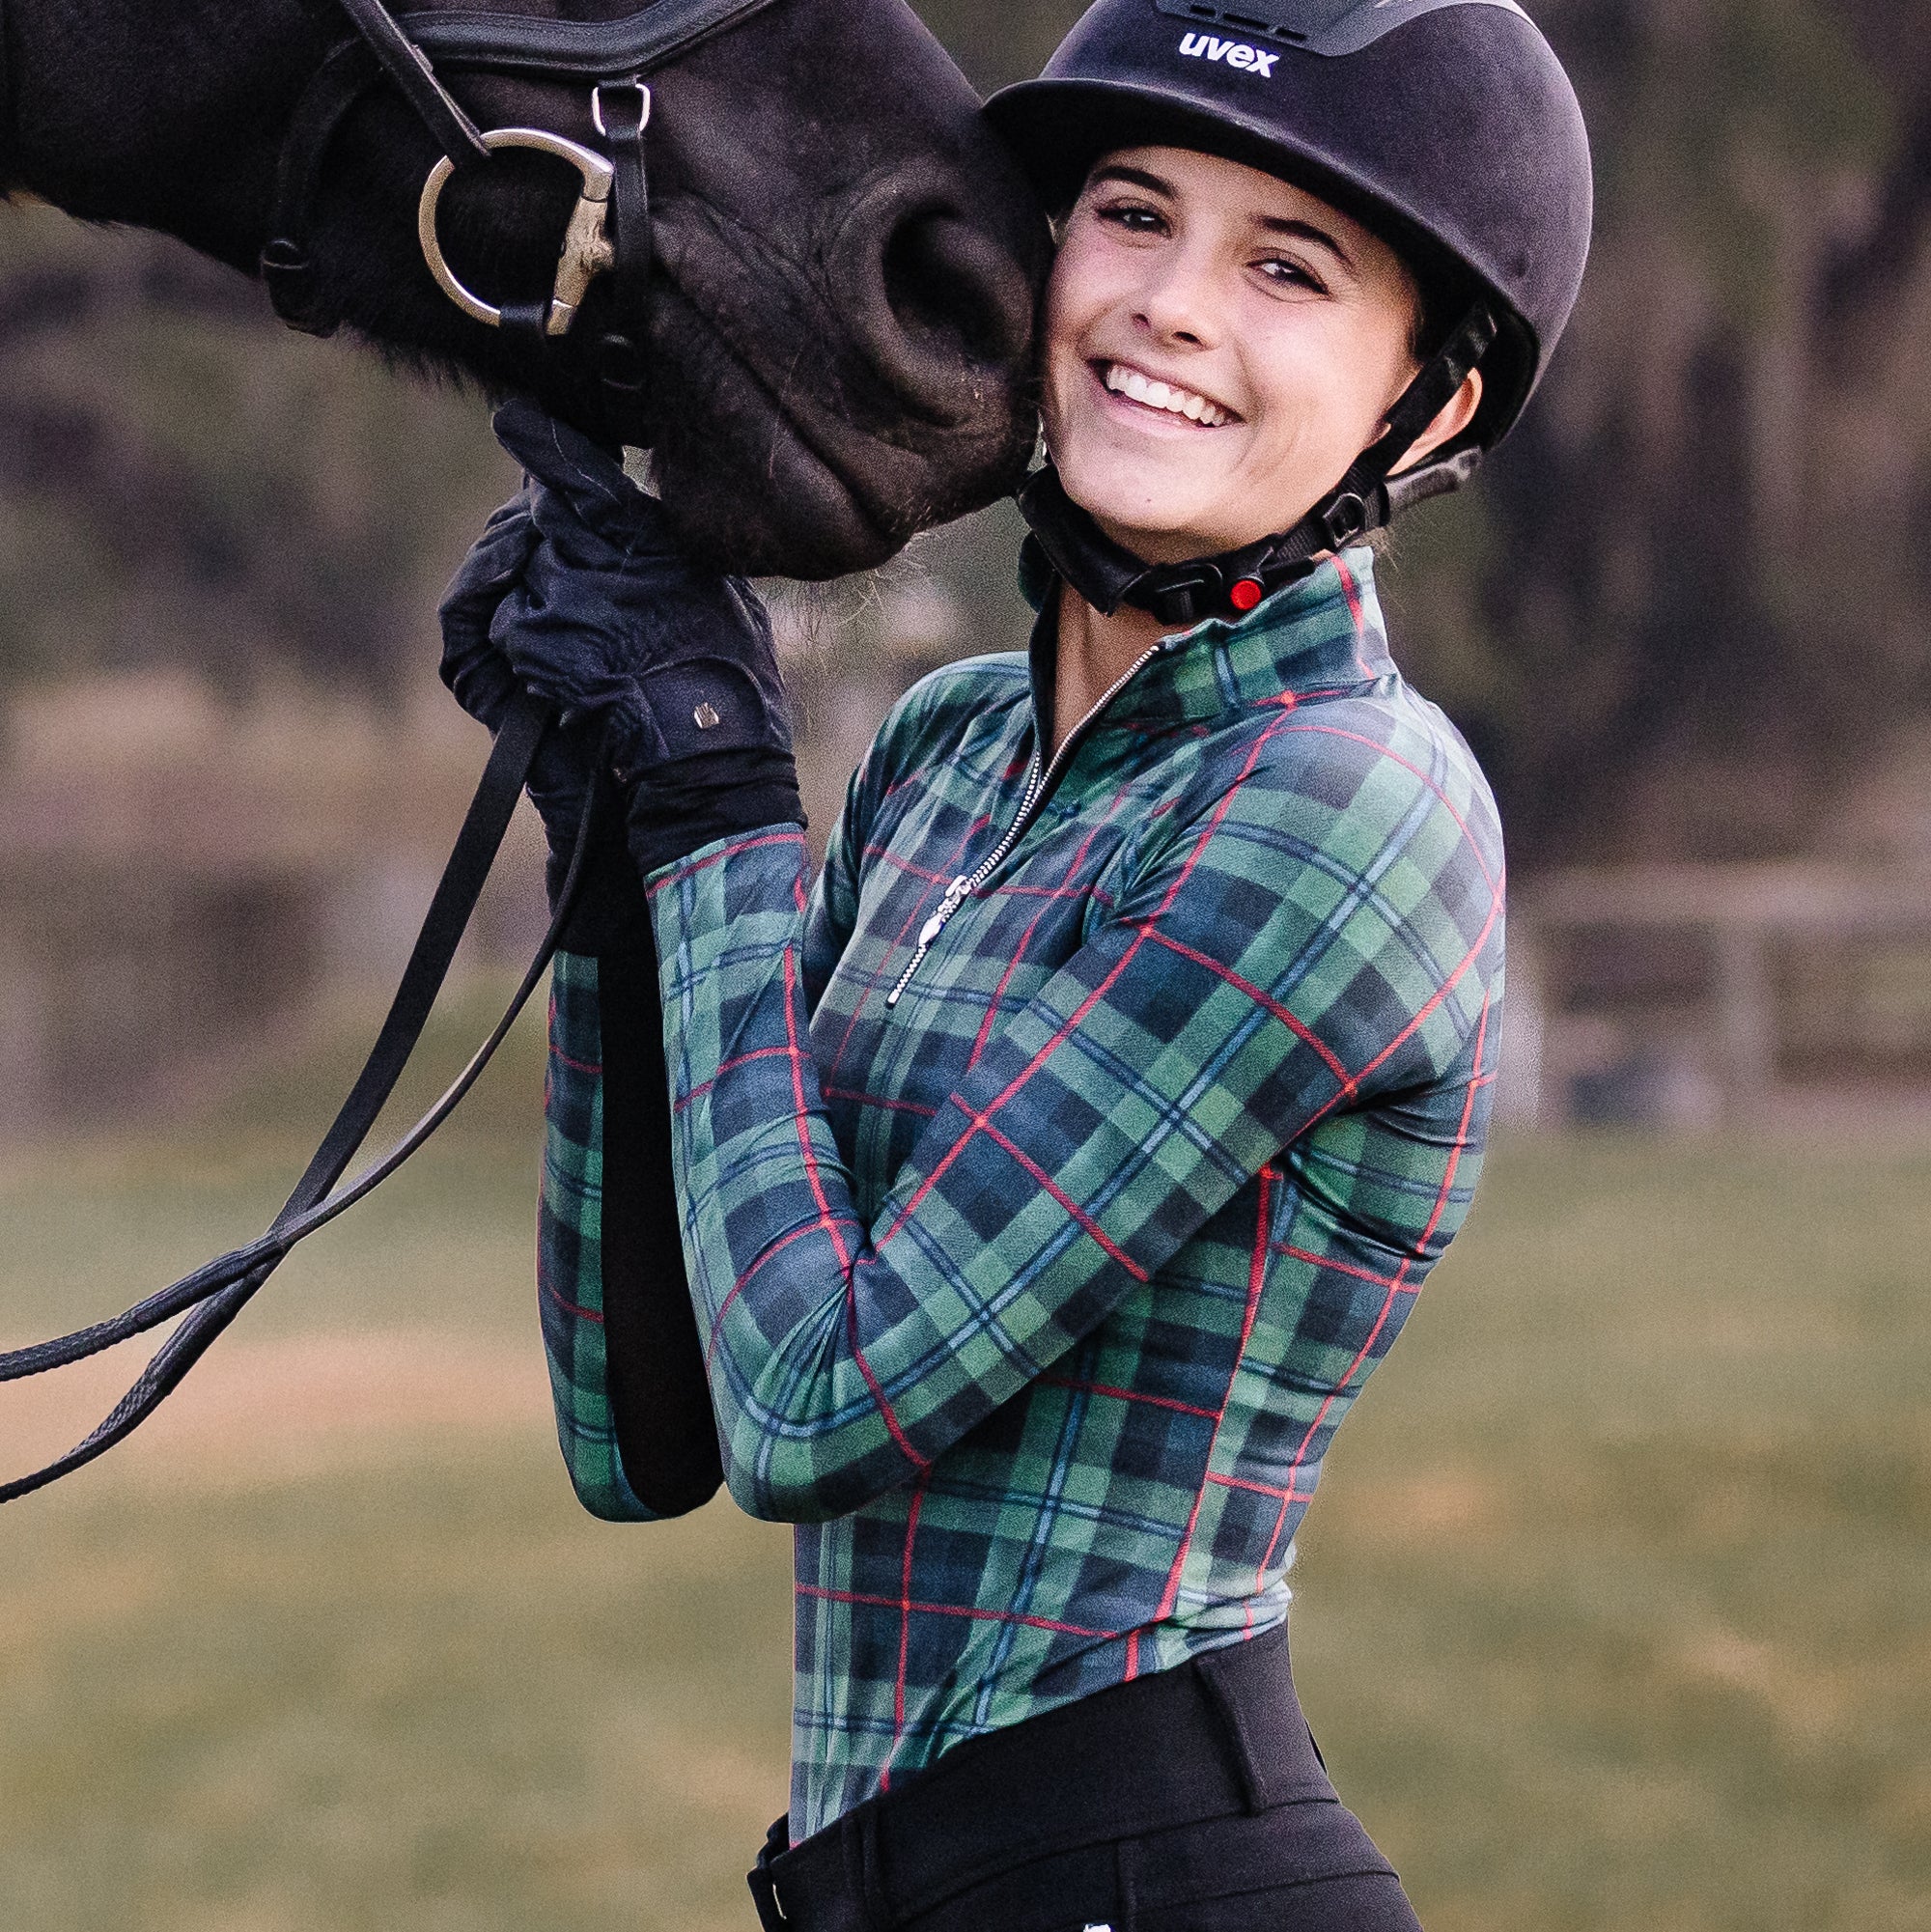 Equestrian Athletic Club Sweatshirt